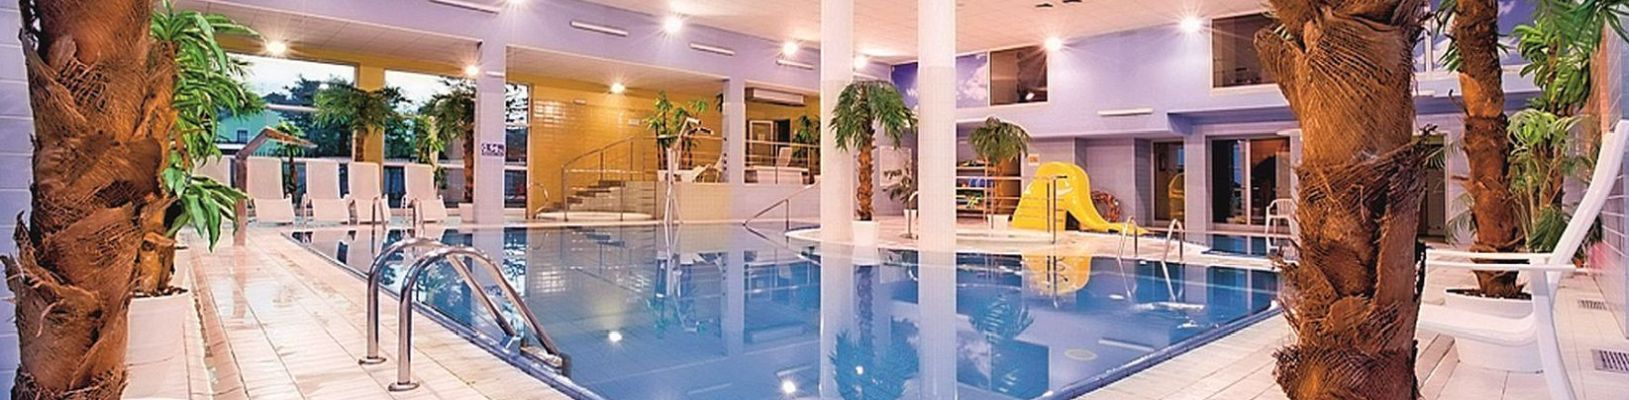 Kururlaub Kolberger Deep I Hotel Akces Medical Fit & Spa I mit Haustürabholung